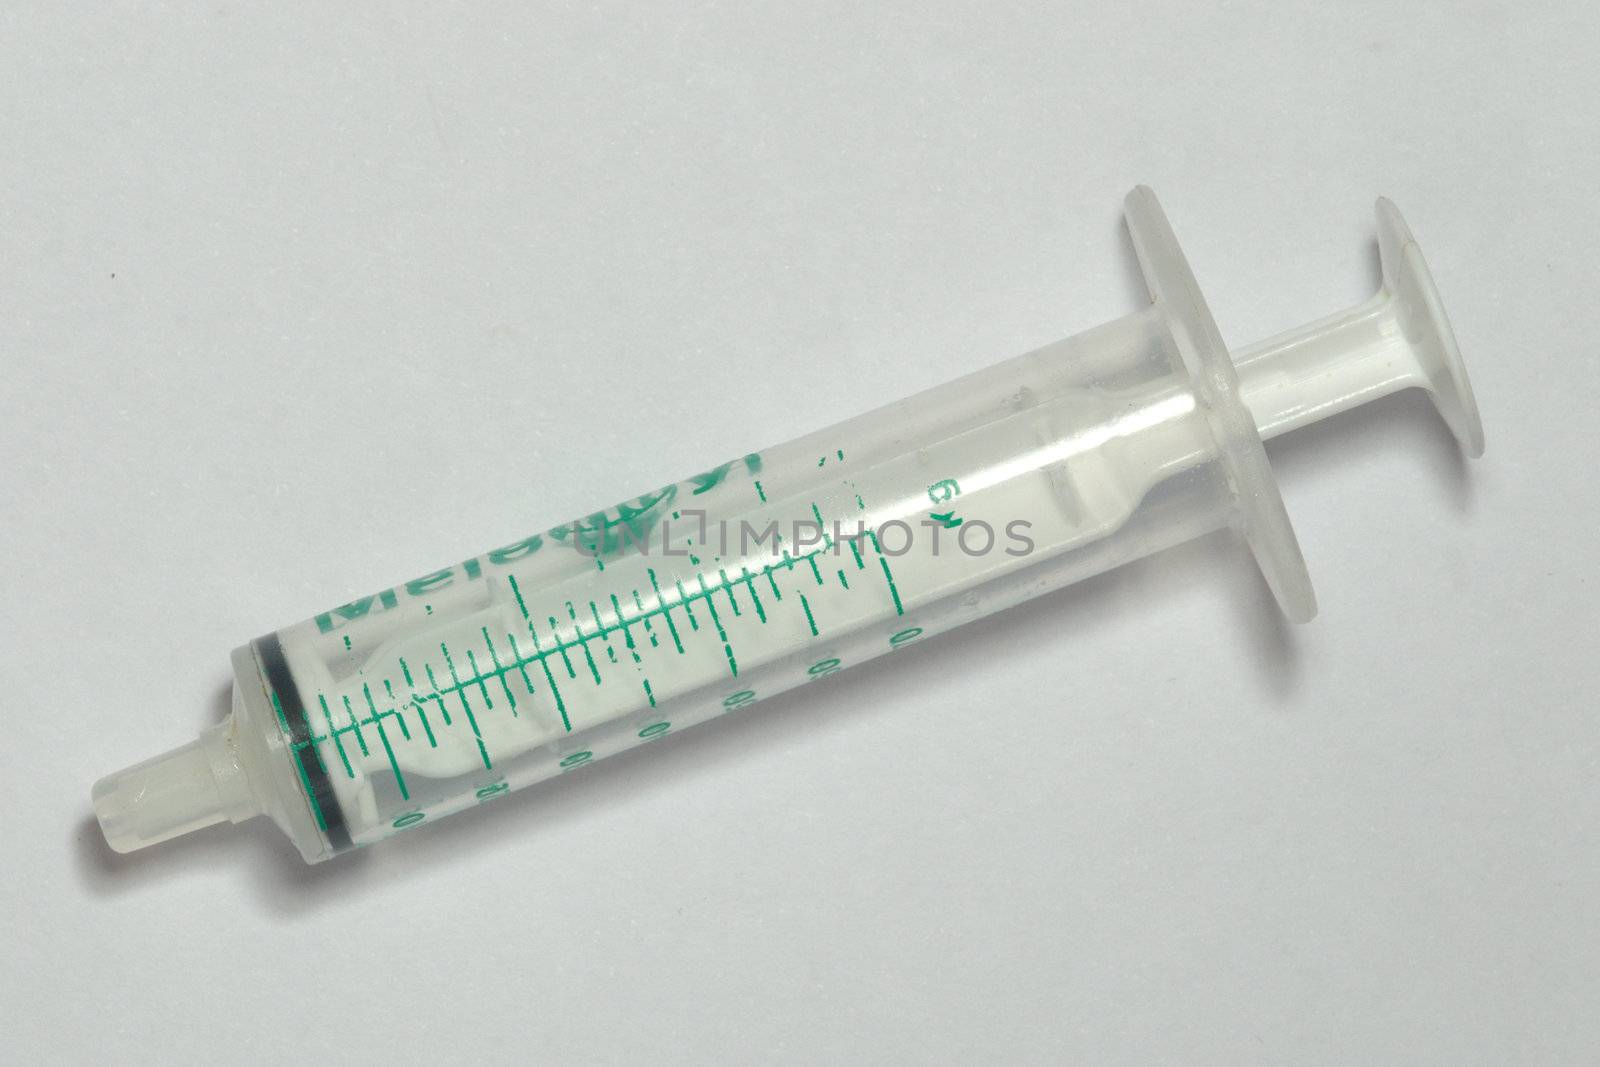 Syringe by pauws99